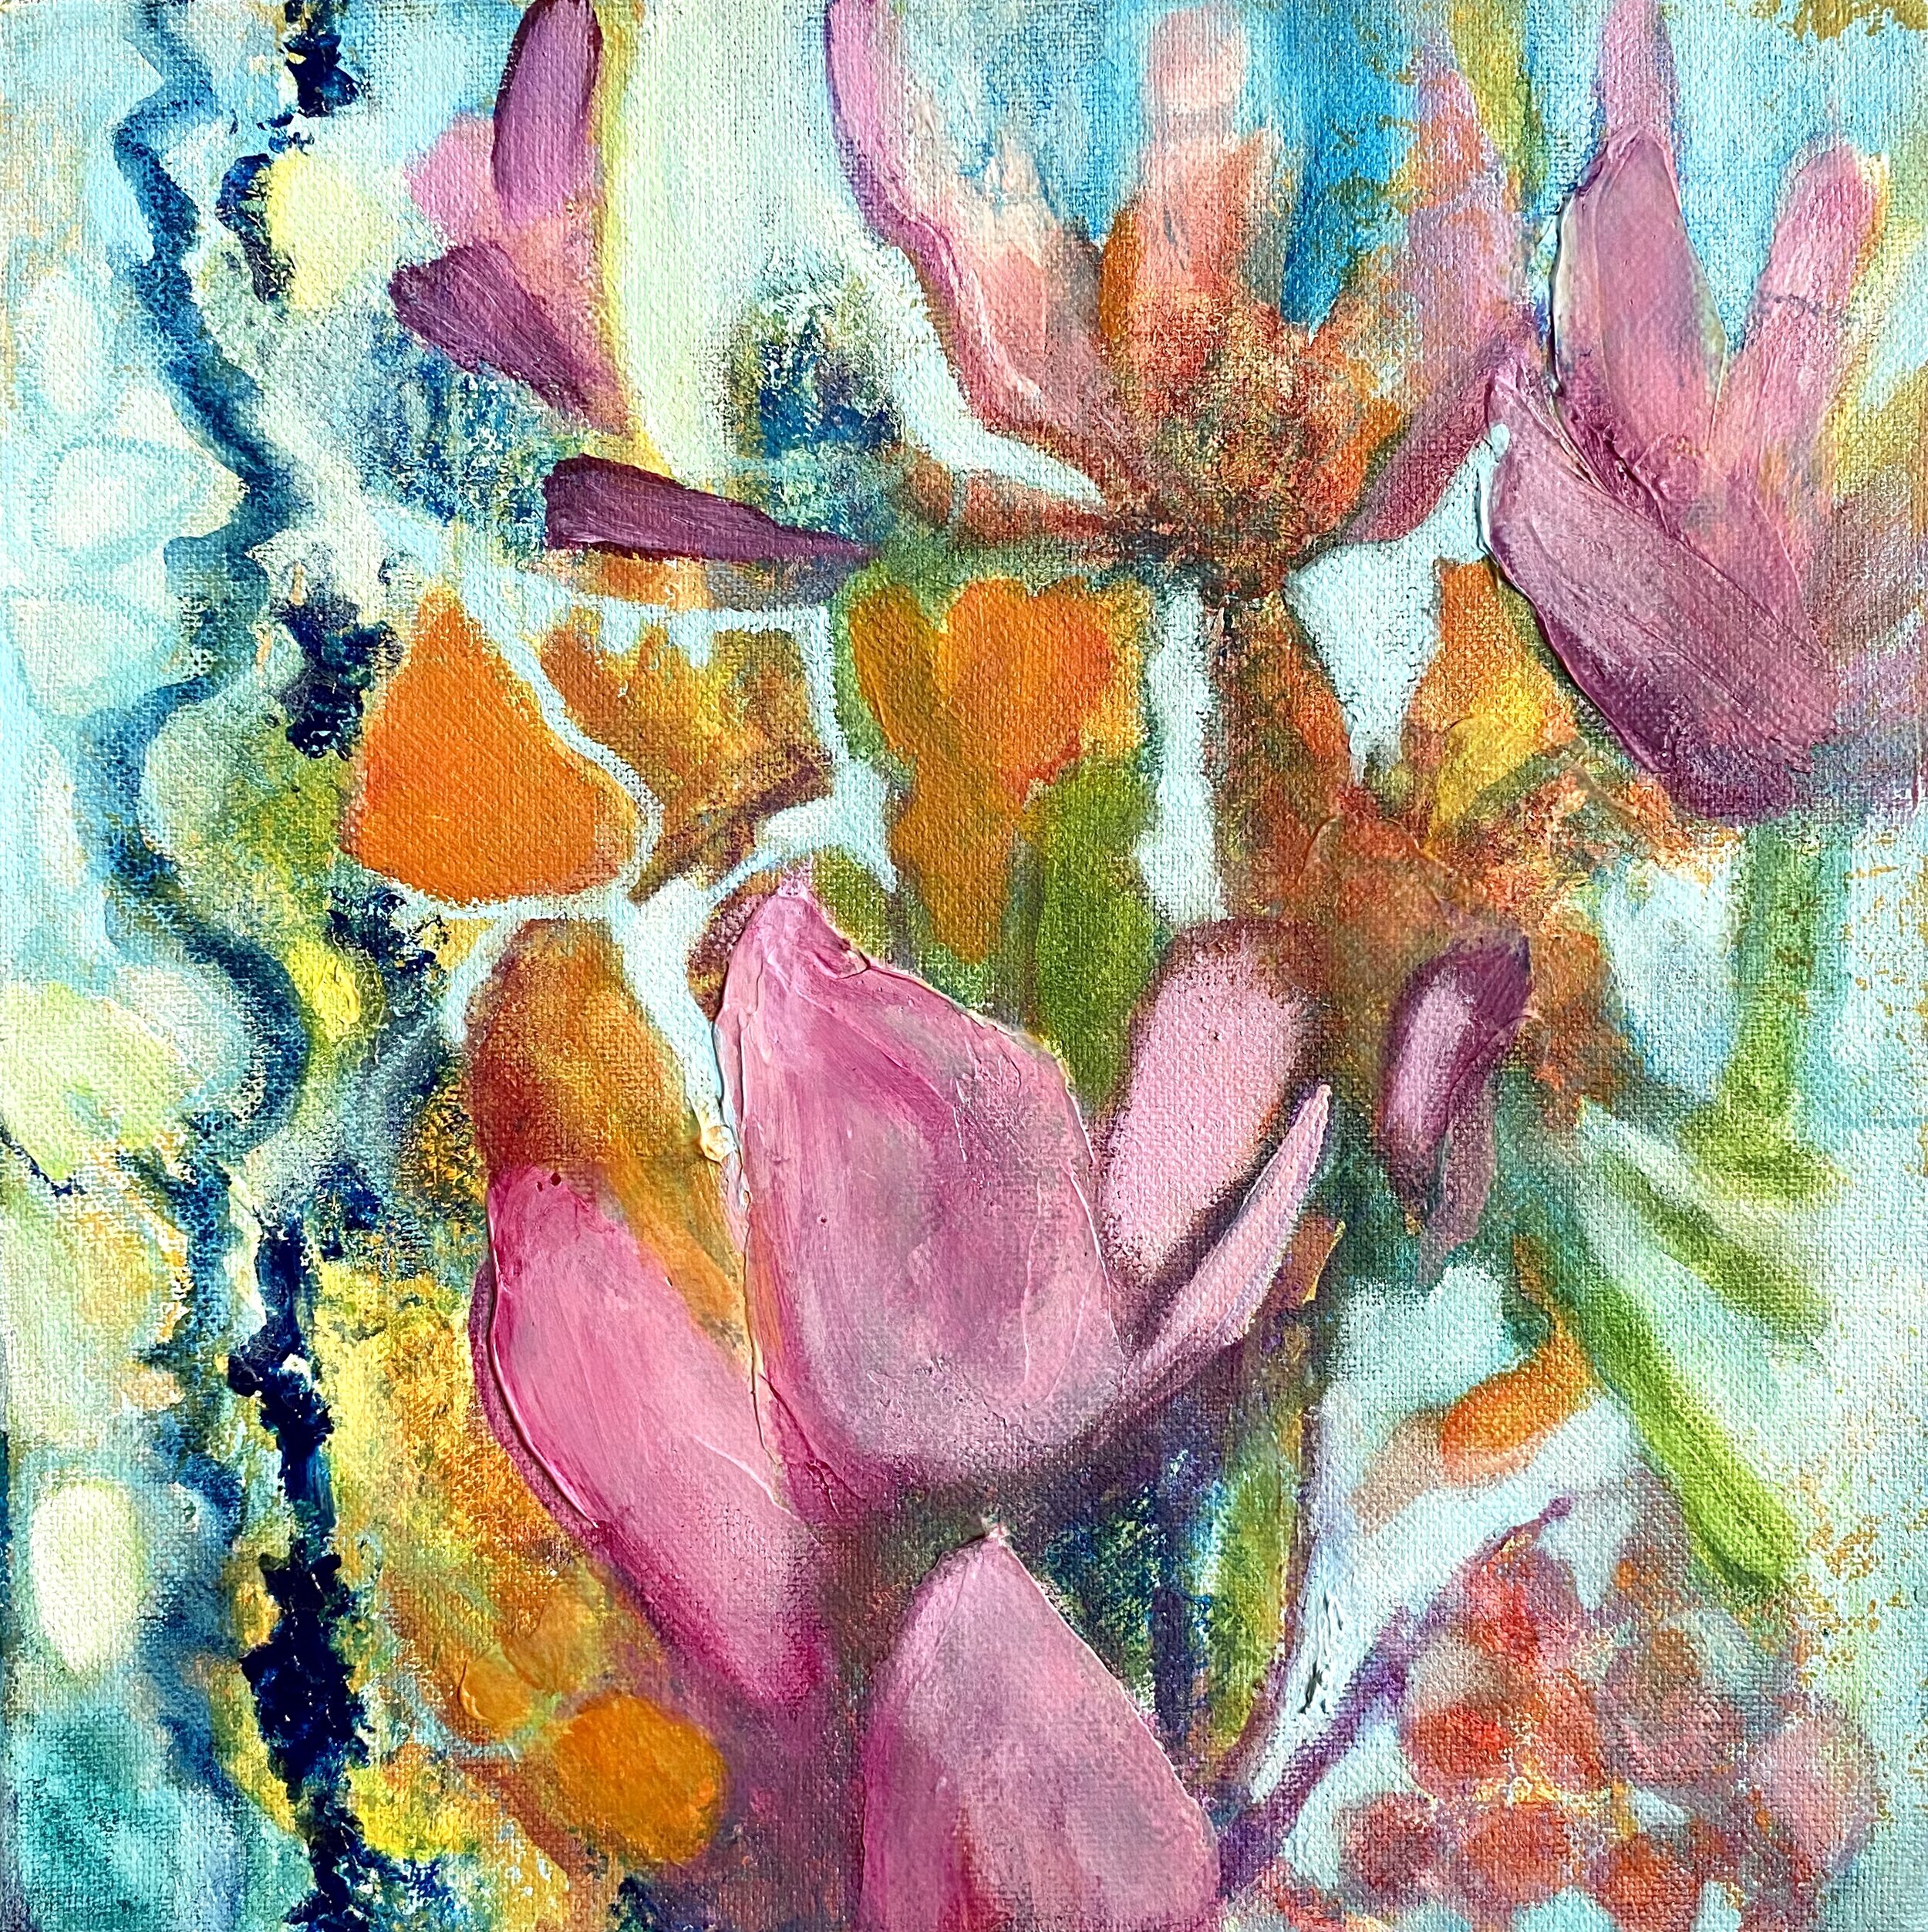 "Floating Lotus" by Susan Irish